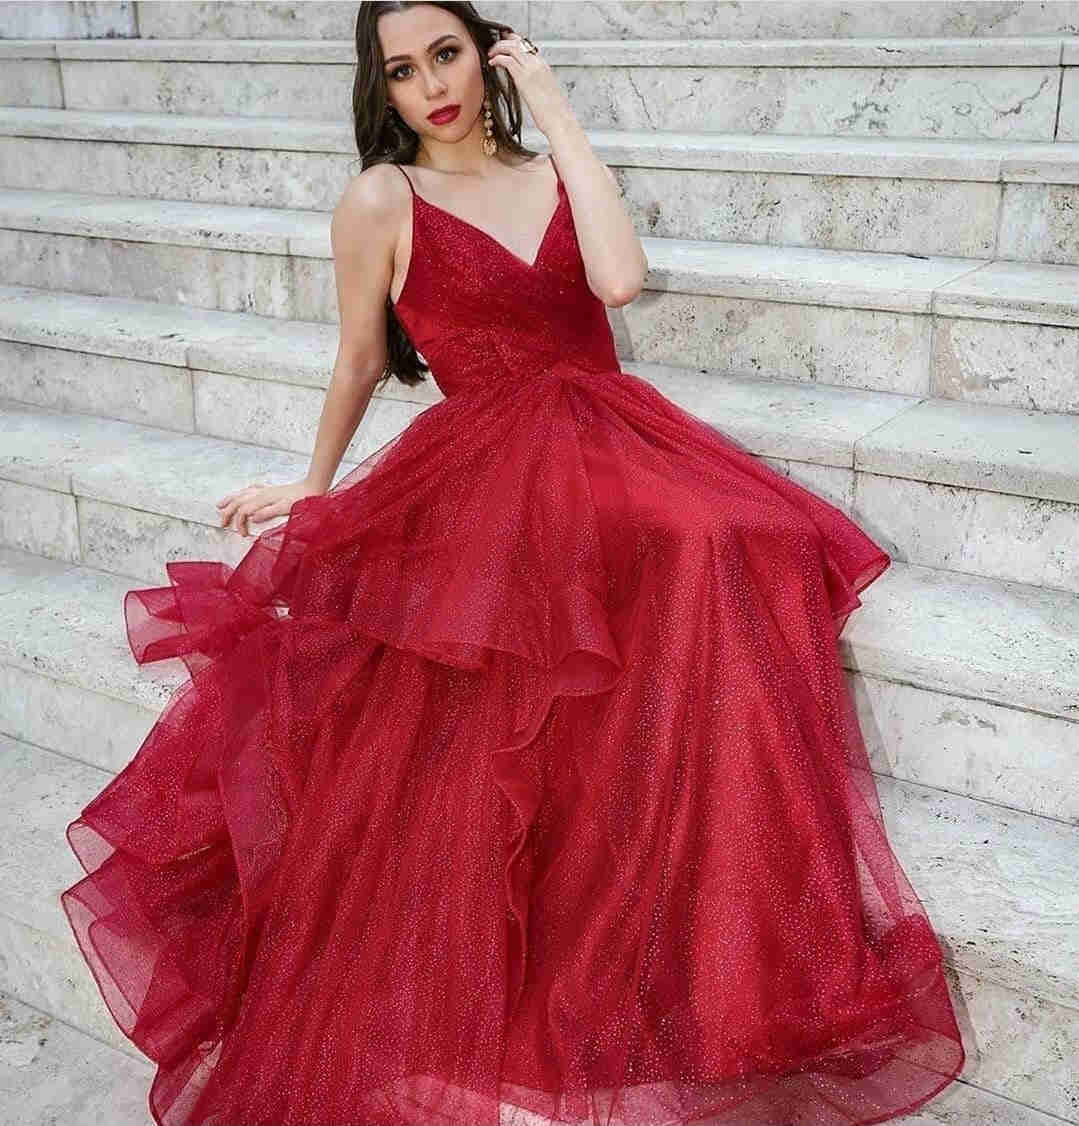 Glitter Straps V-Neck Red Long Prom Dress?Glitter Straps V-Neck Red Long Prom Dress?long dress,cheap dress,prom dress 2021,tulle long dress